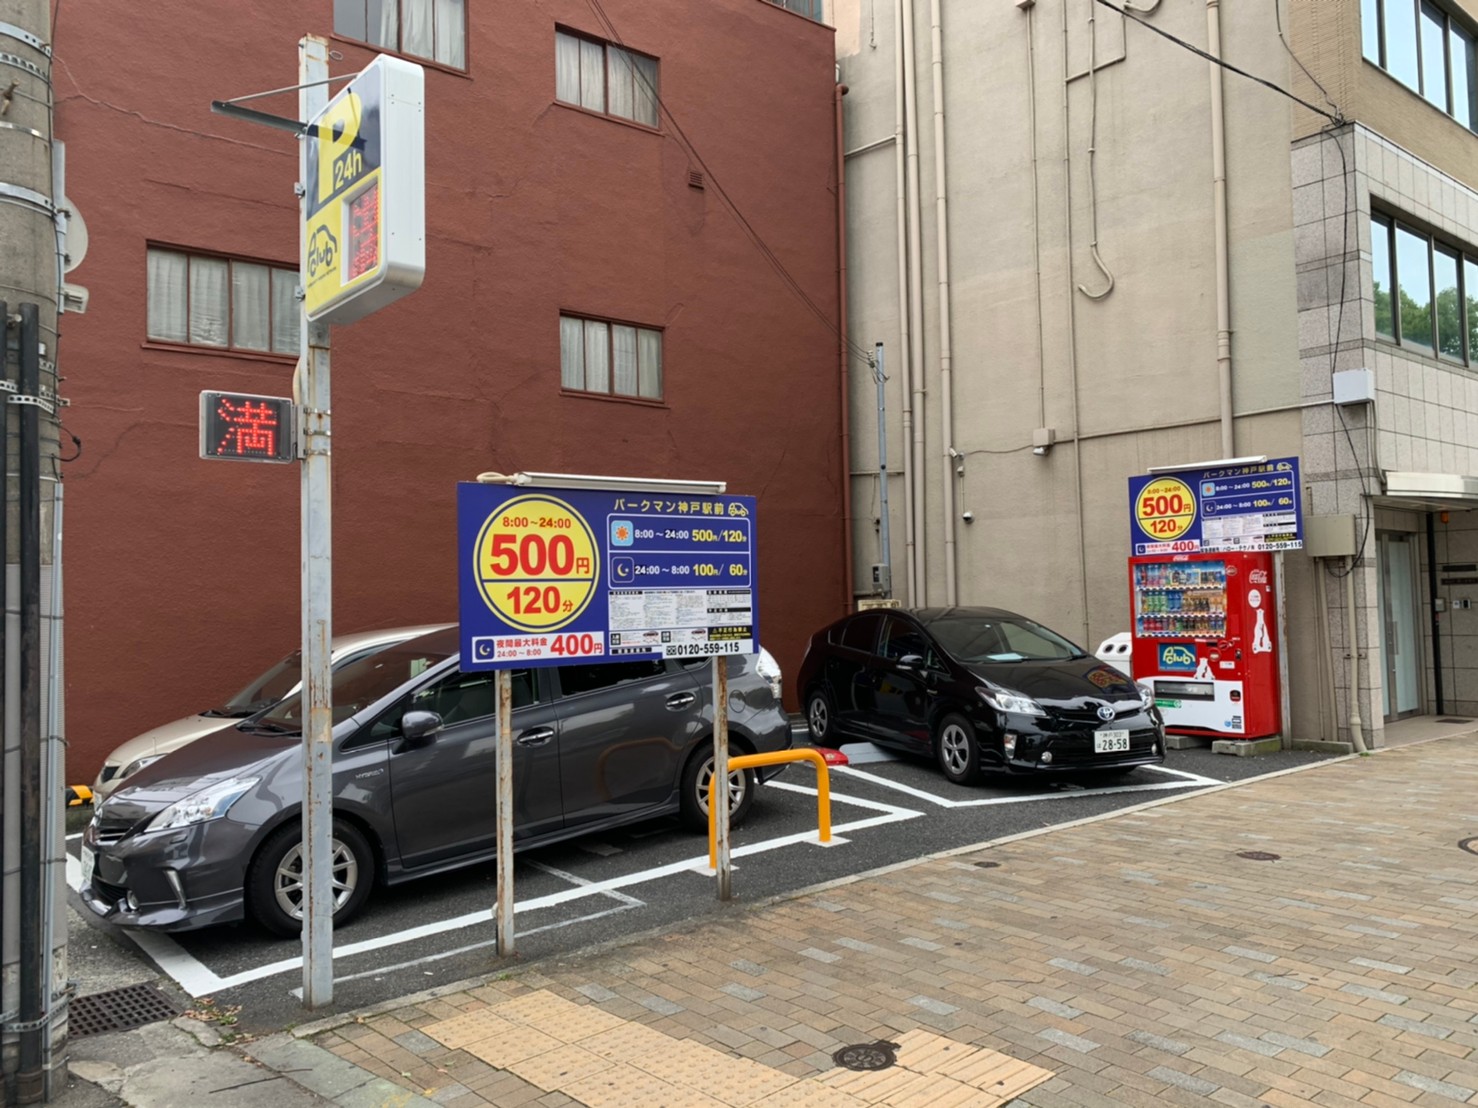 パークマン神戸駅前 神戸市中央区の時間貸し駐車場